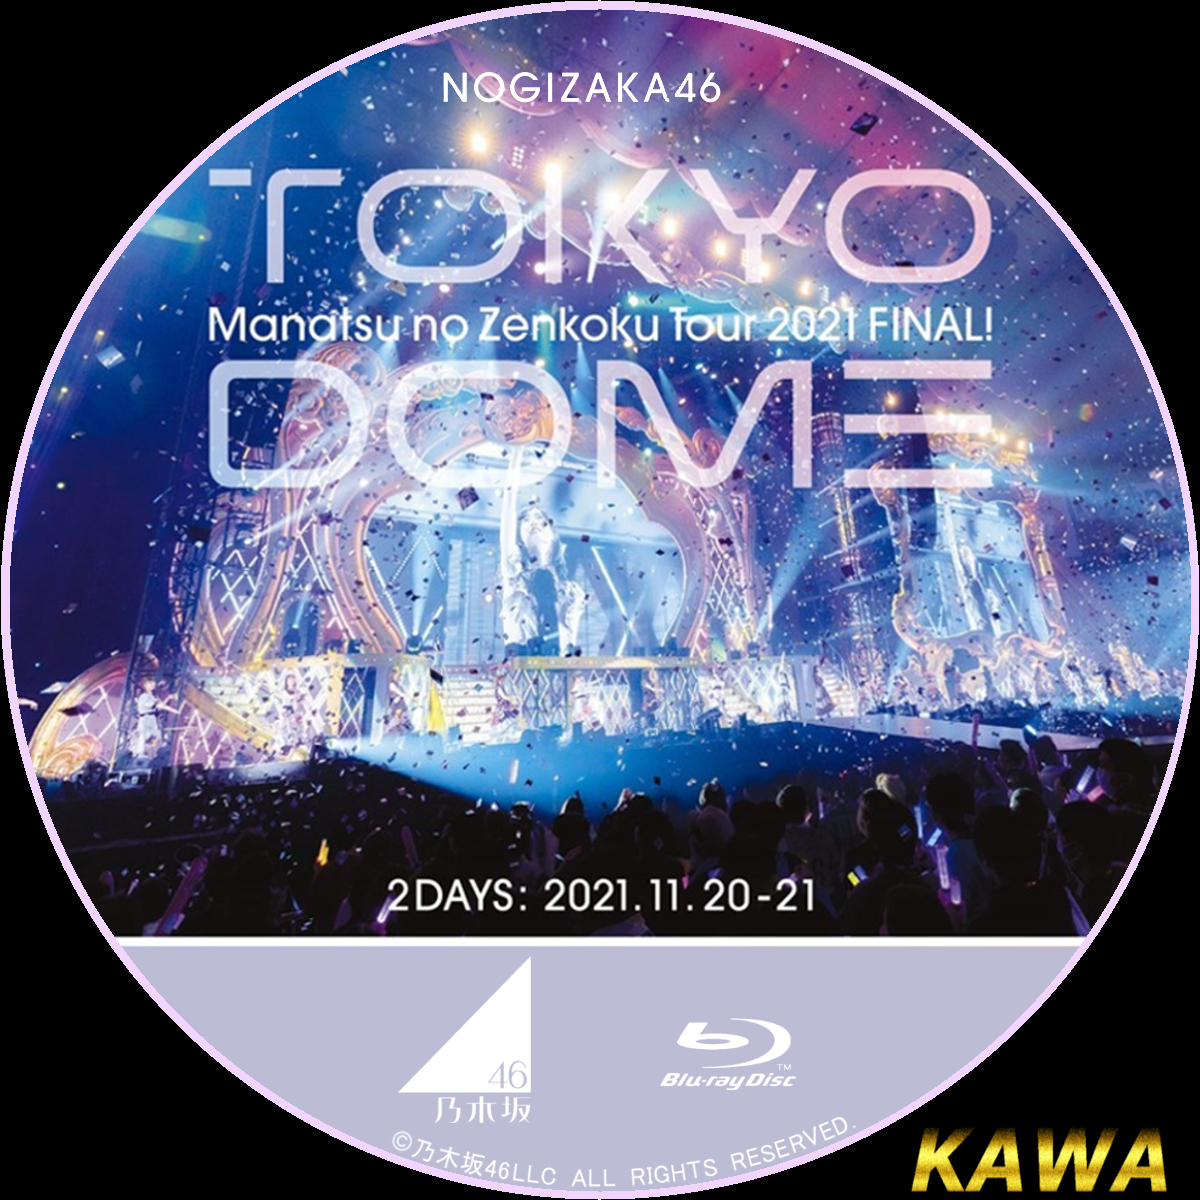 乃木坂46 真夏の全国ツアー2021 Blu-ray